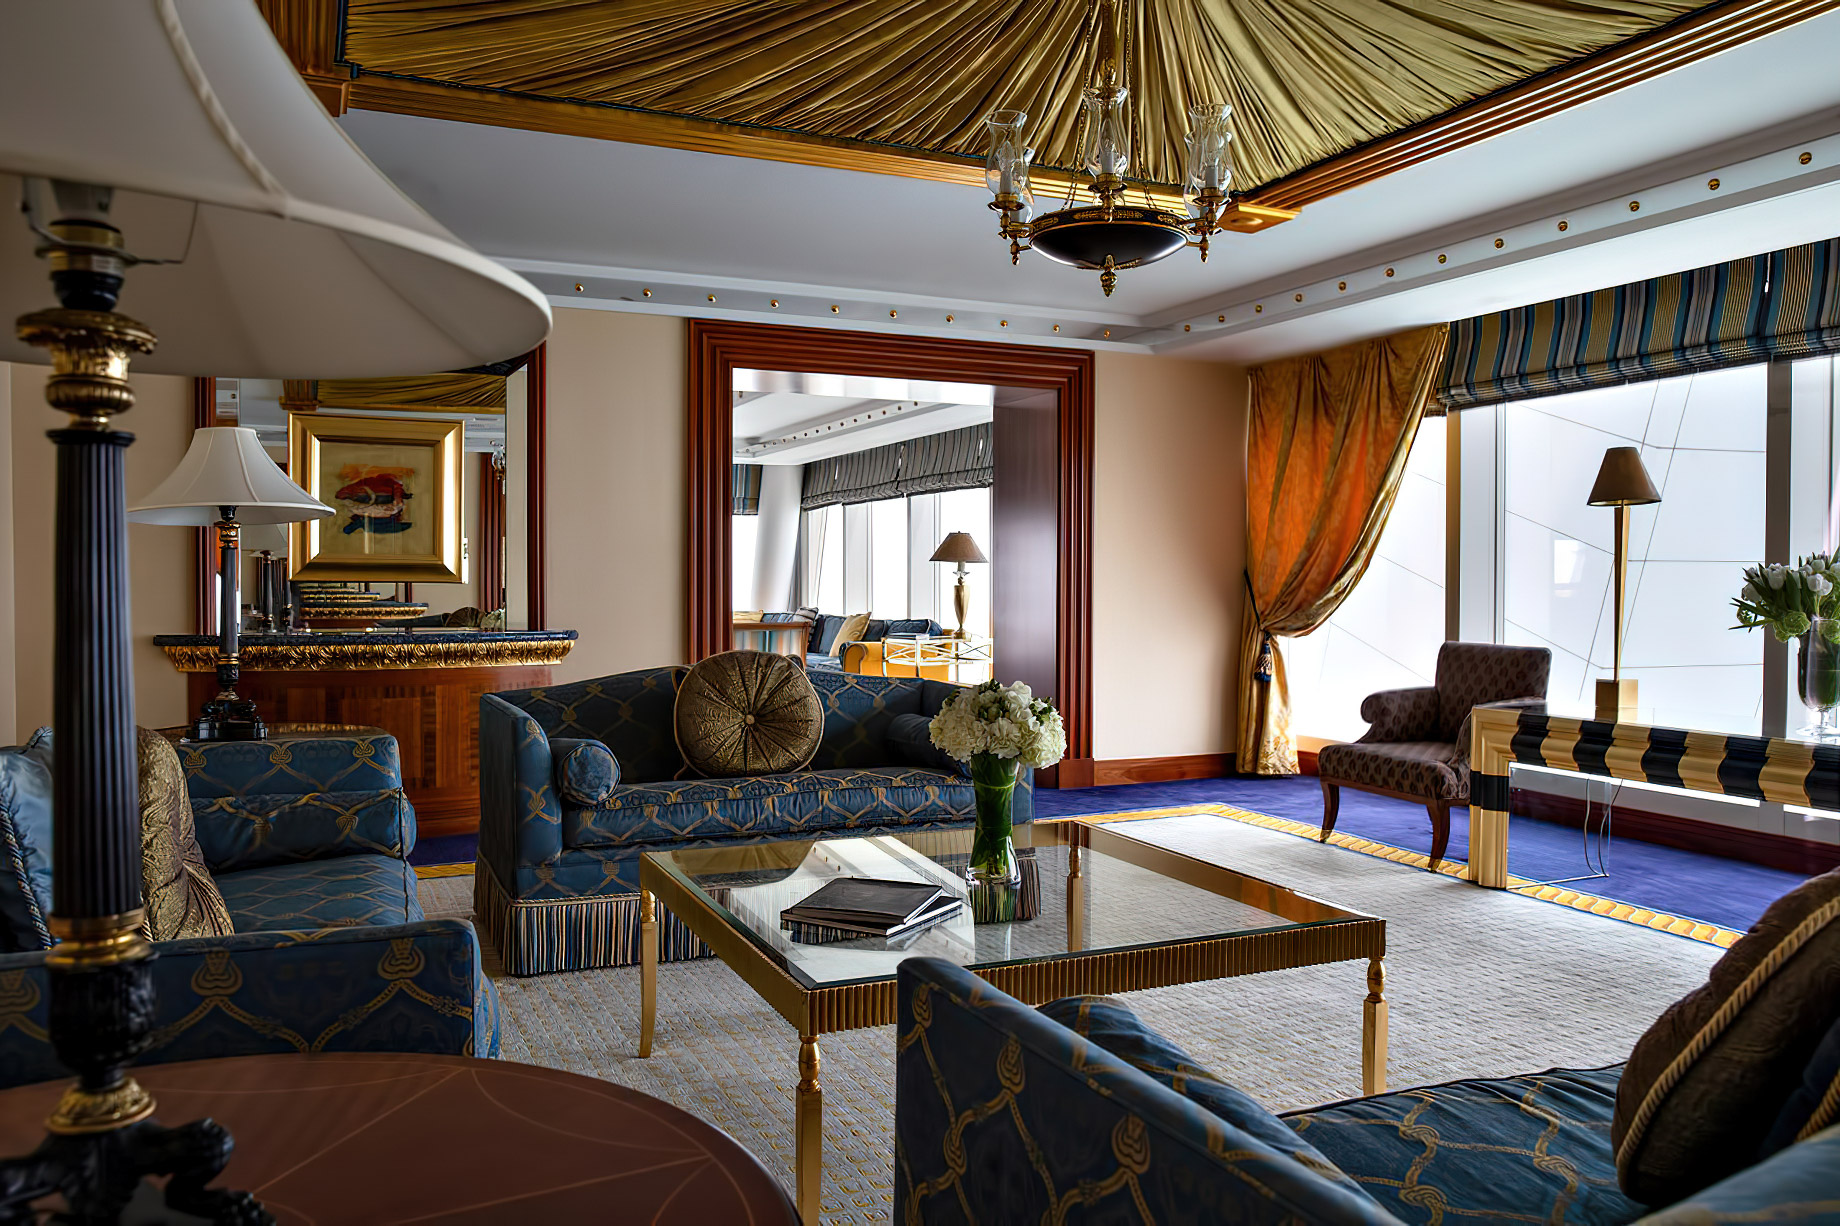 Burj Al Arab Jumeirah Hotel – Dubai, UAE – Diplomatic Suite